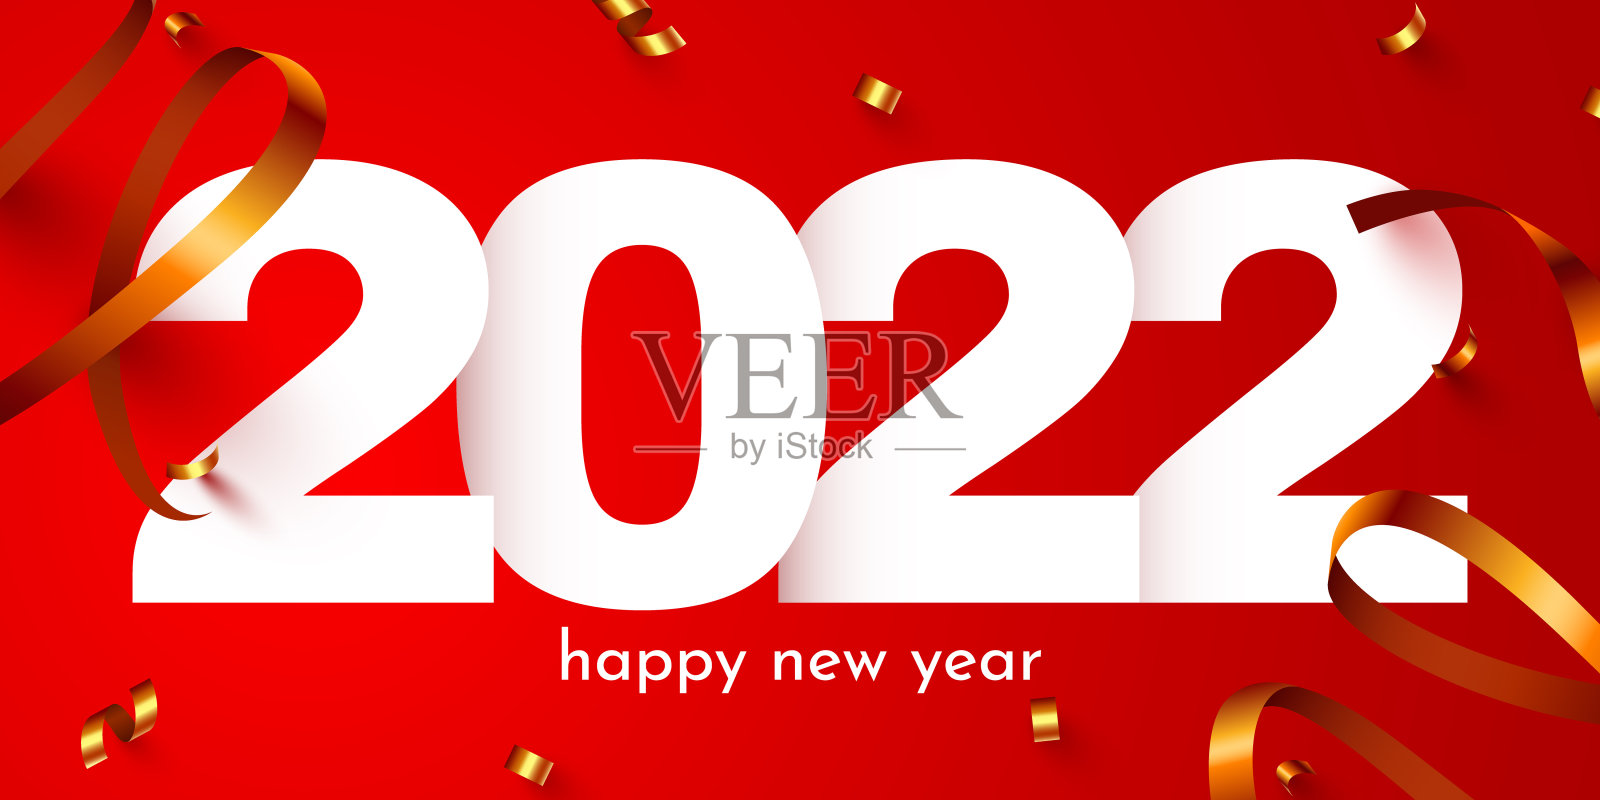 祝新的2022年快乐。带着五彩纸屑，2022年假期来临。节日海报或横幅设计。设计模板素材